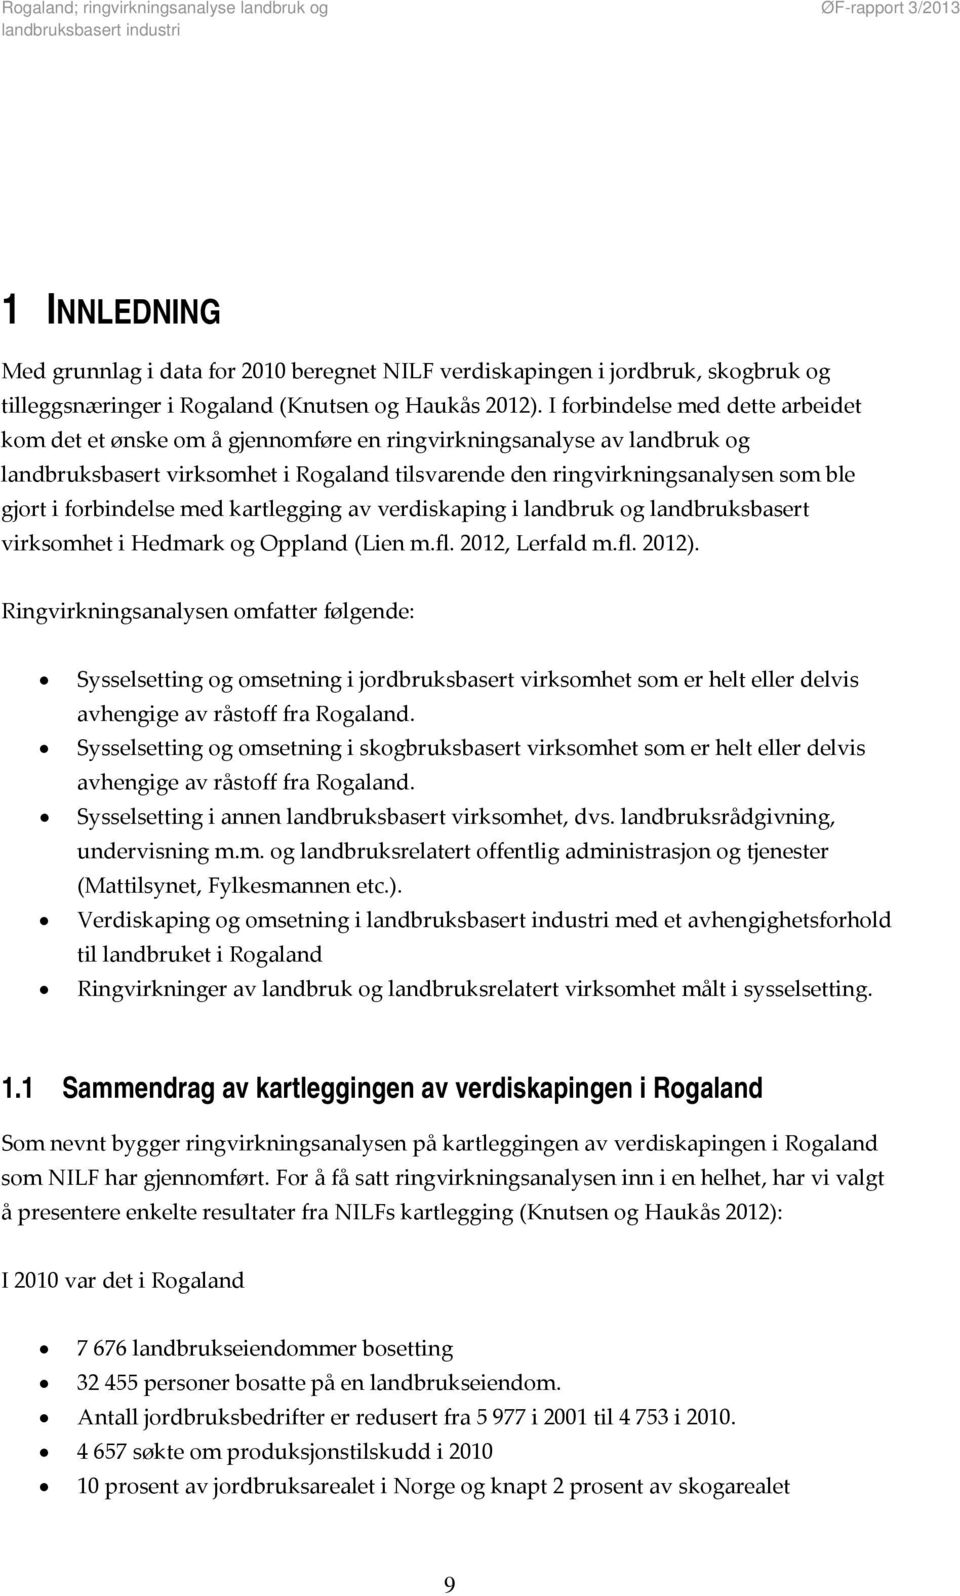 forbindelse med kartlegging av verdiskaping i landbruk og landbruksbasert virksomhet i Hedmark og Oppland (Lien m.fl. 2012, Lerfald m.fl. 2012).